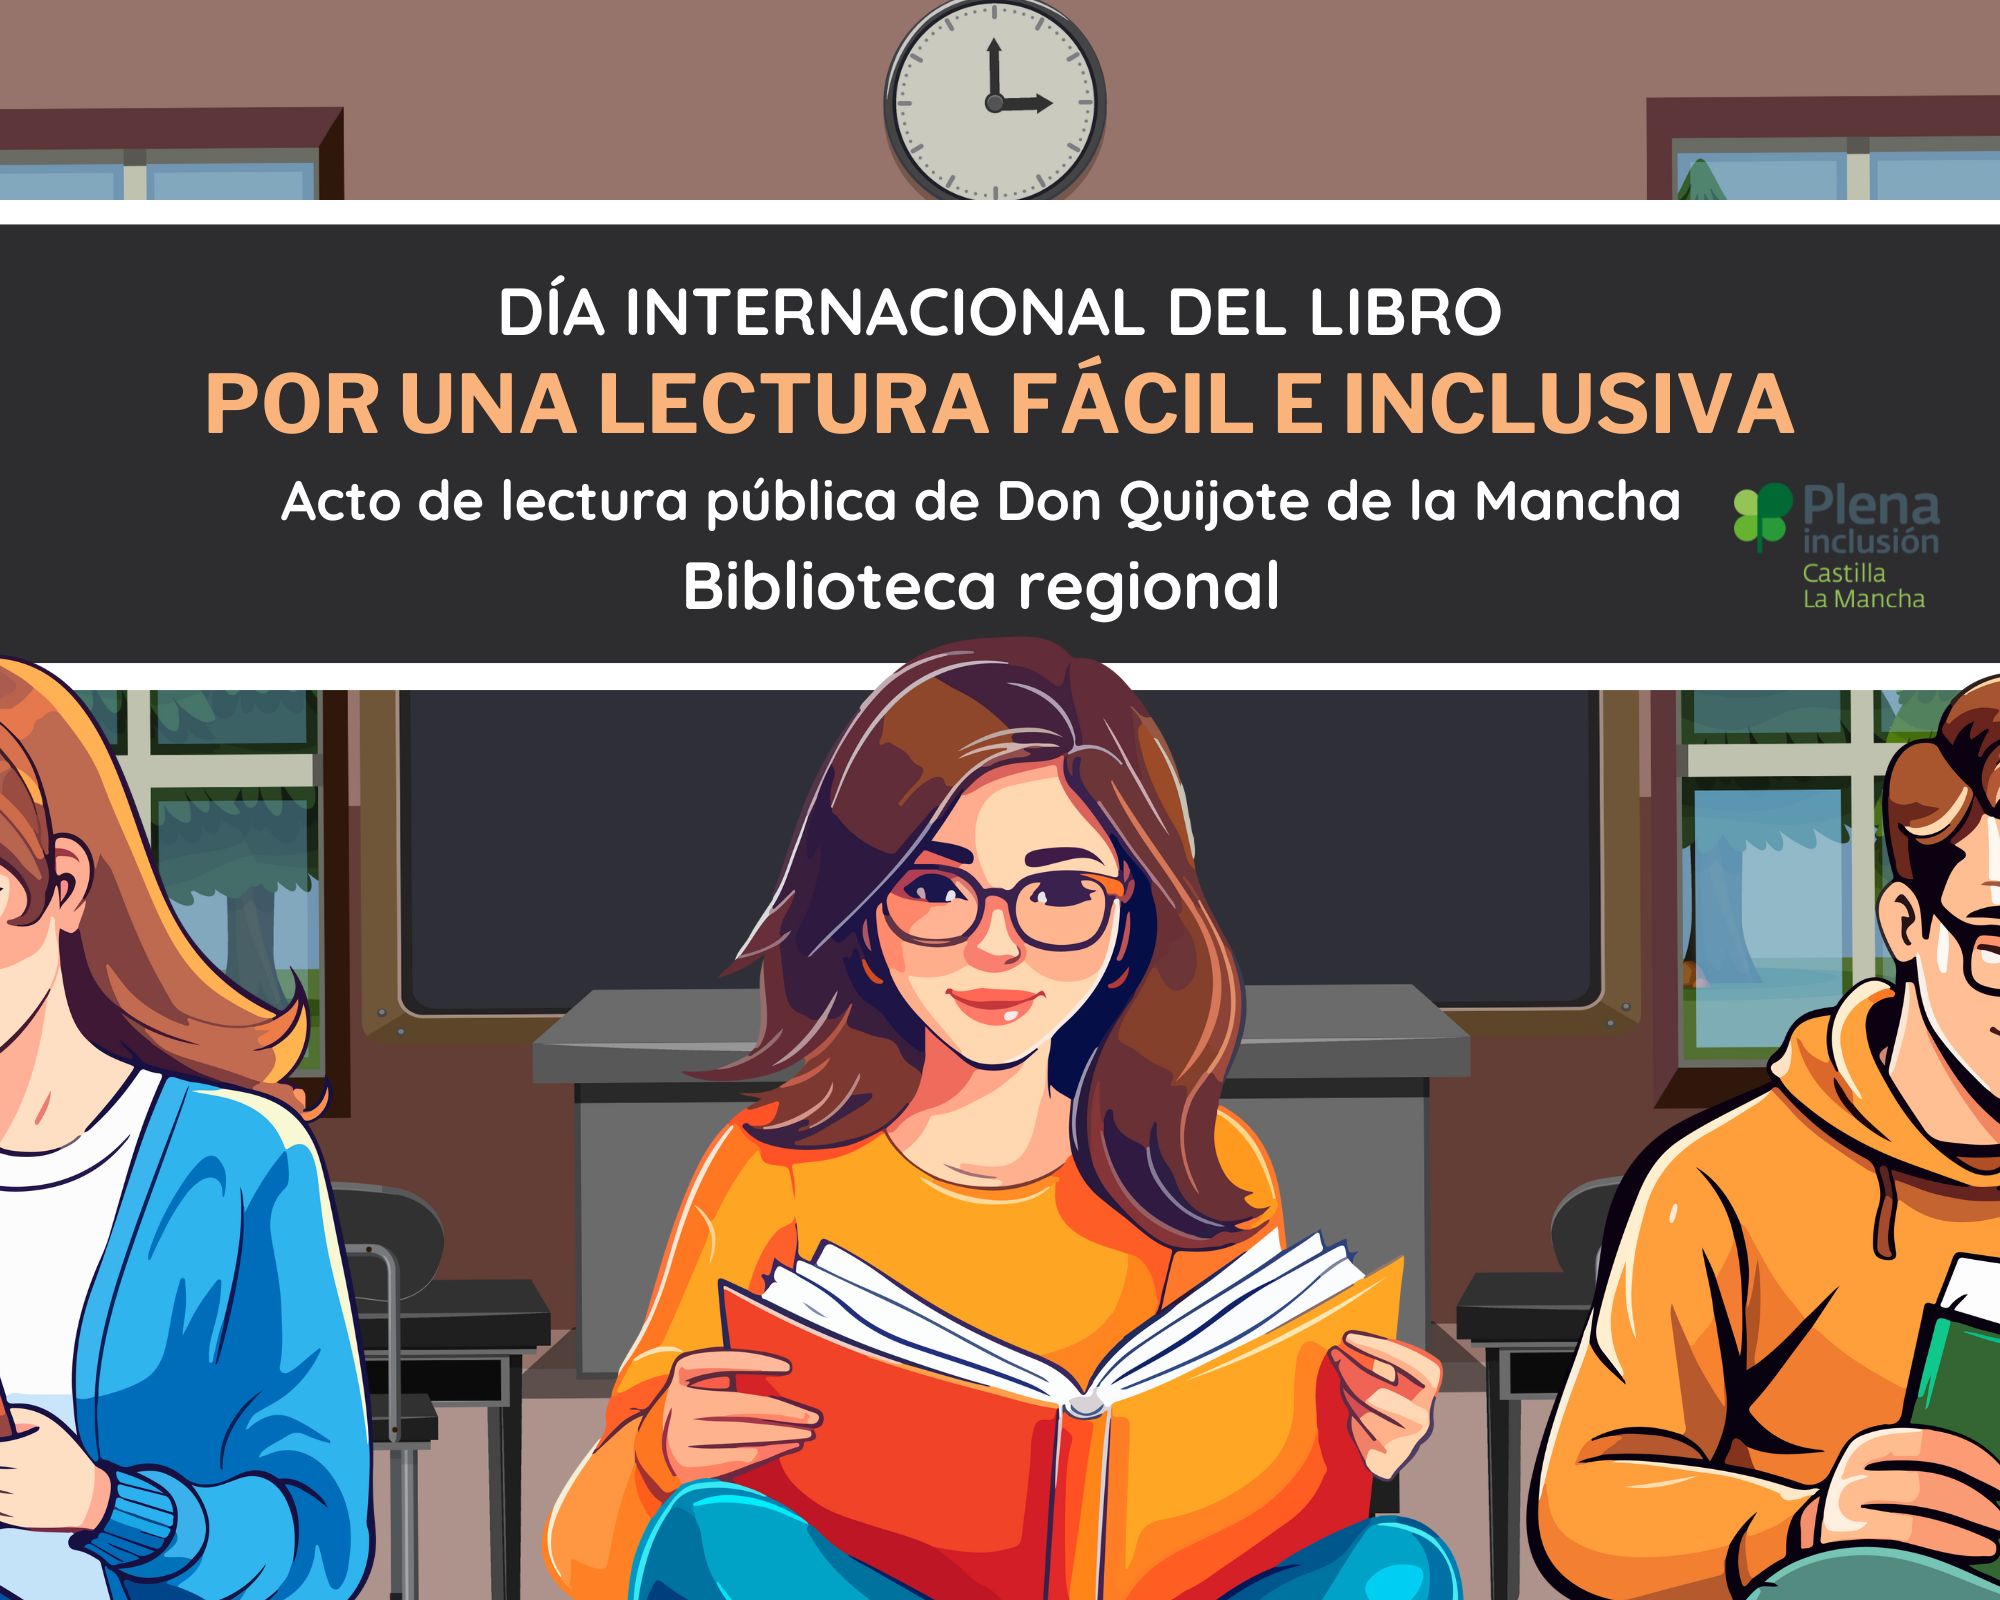 Ir a Plena inclusión CLM propone una lectura inclusiva de Don Quijote de la Mancha en Lectura Fácil por el Día del Libro